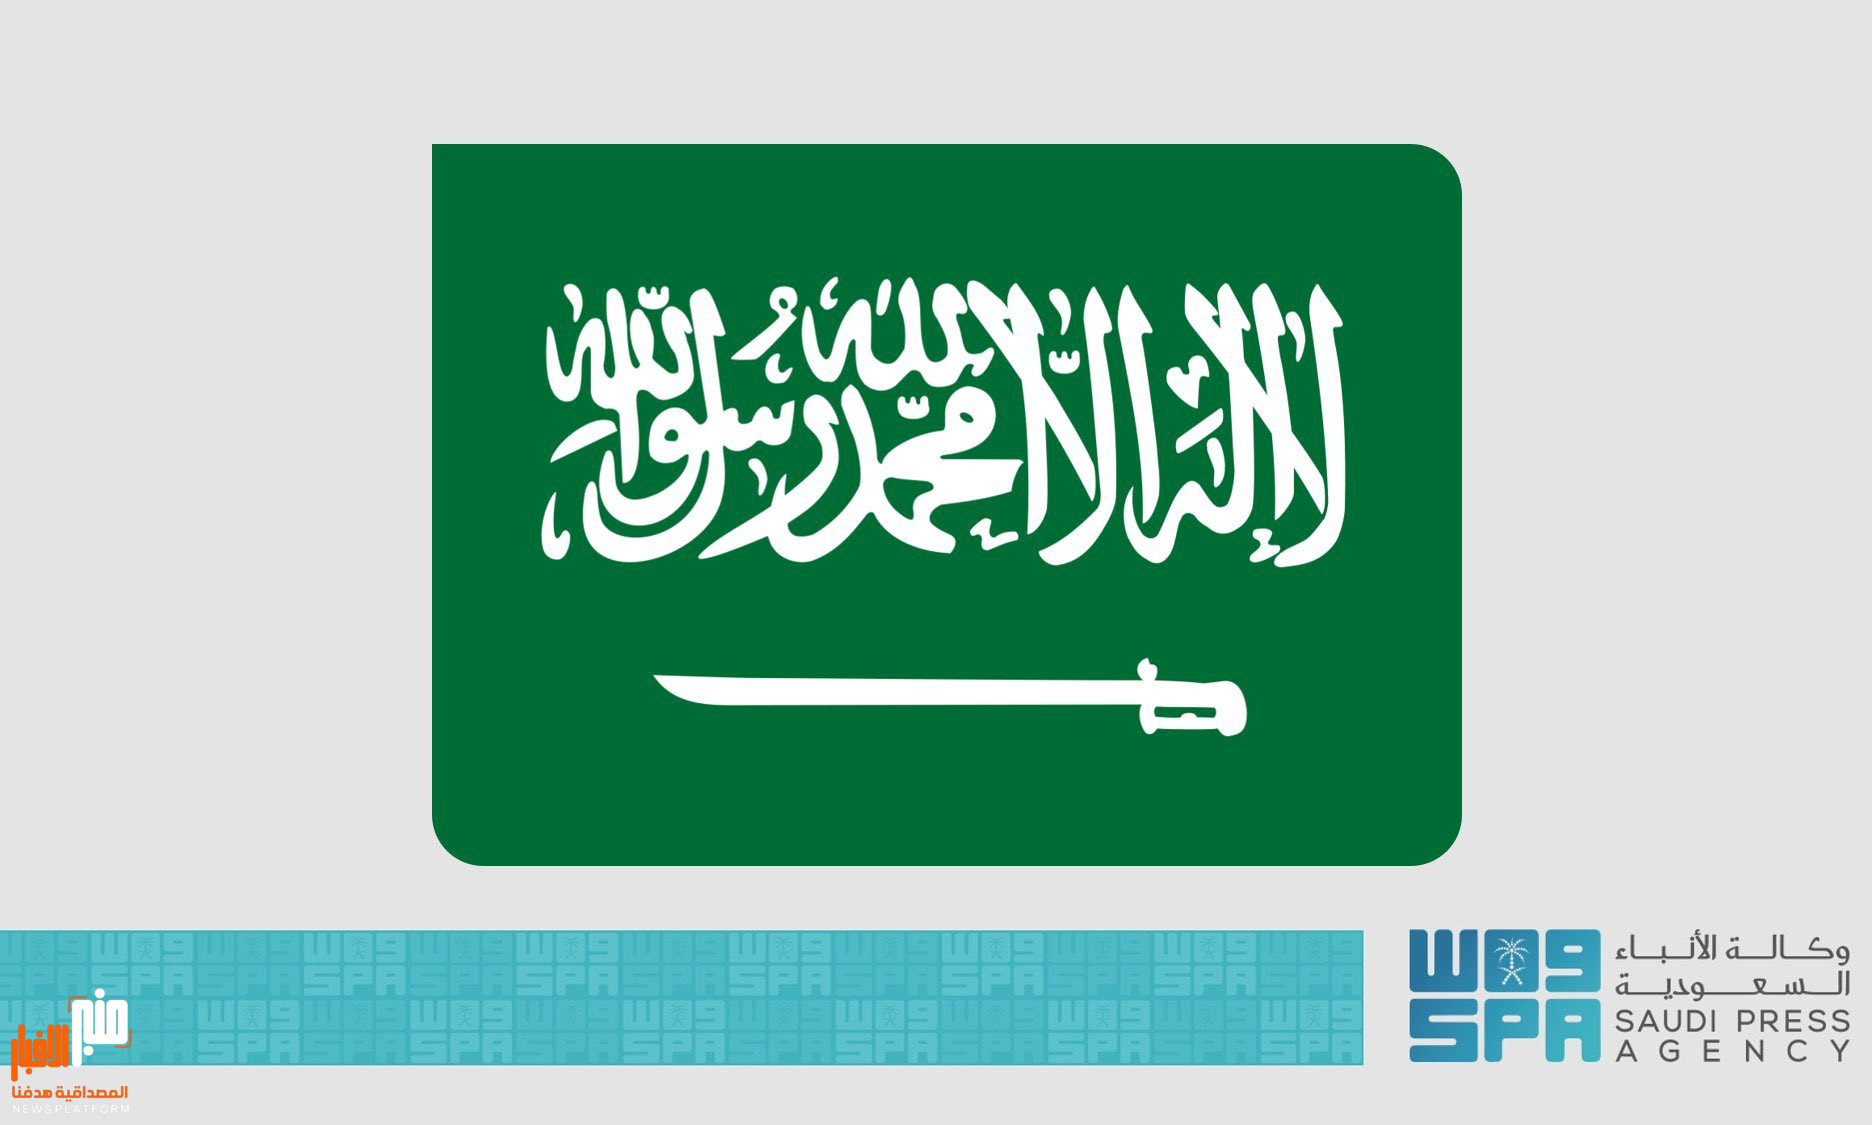 الصحفي فتحي بن لزرق: هذا رئيس الحكومة الجديد خلال نقاش سياسي واسع النطاق في الرياض